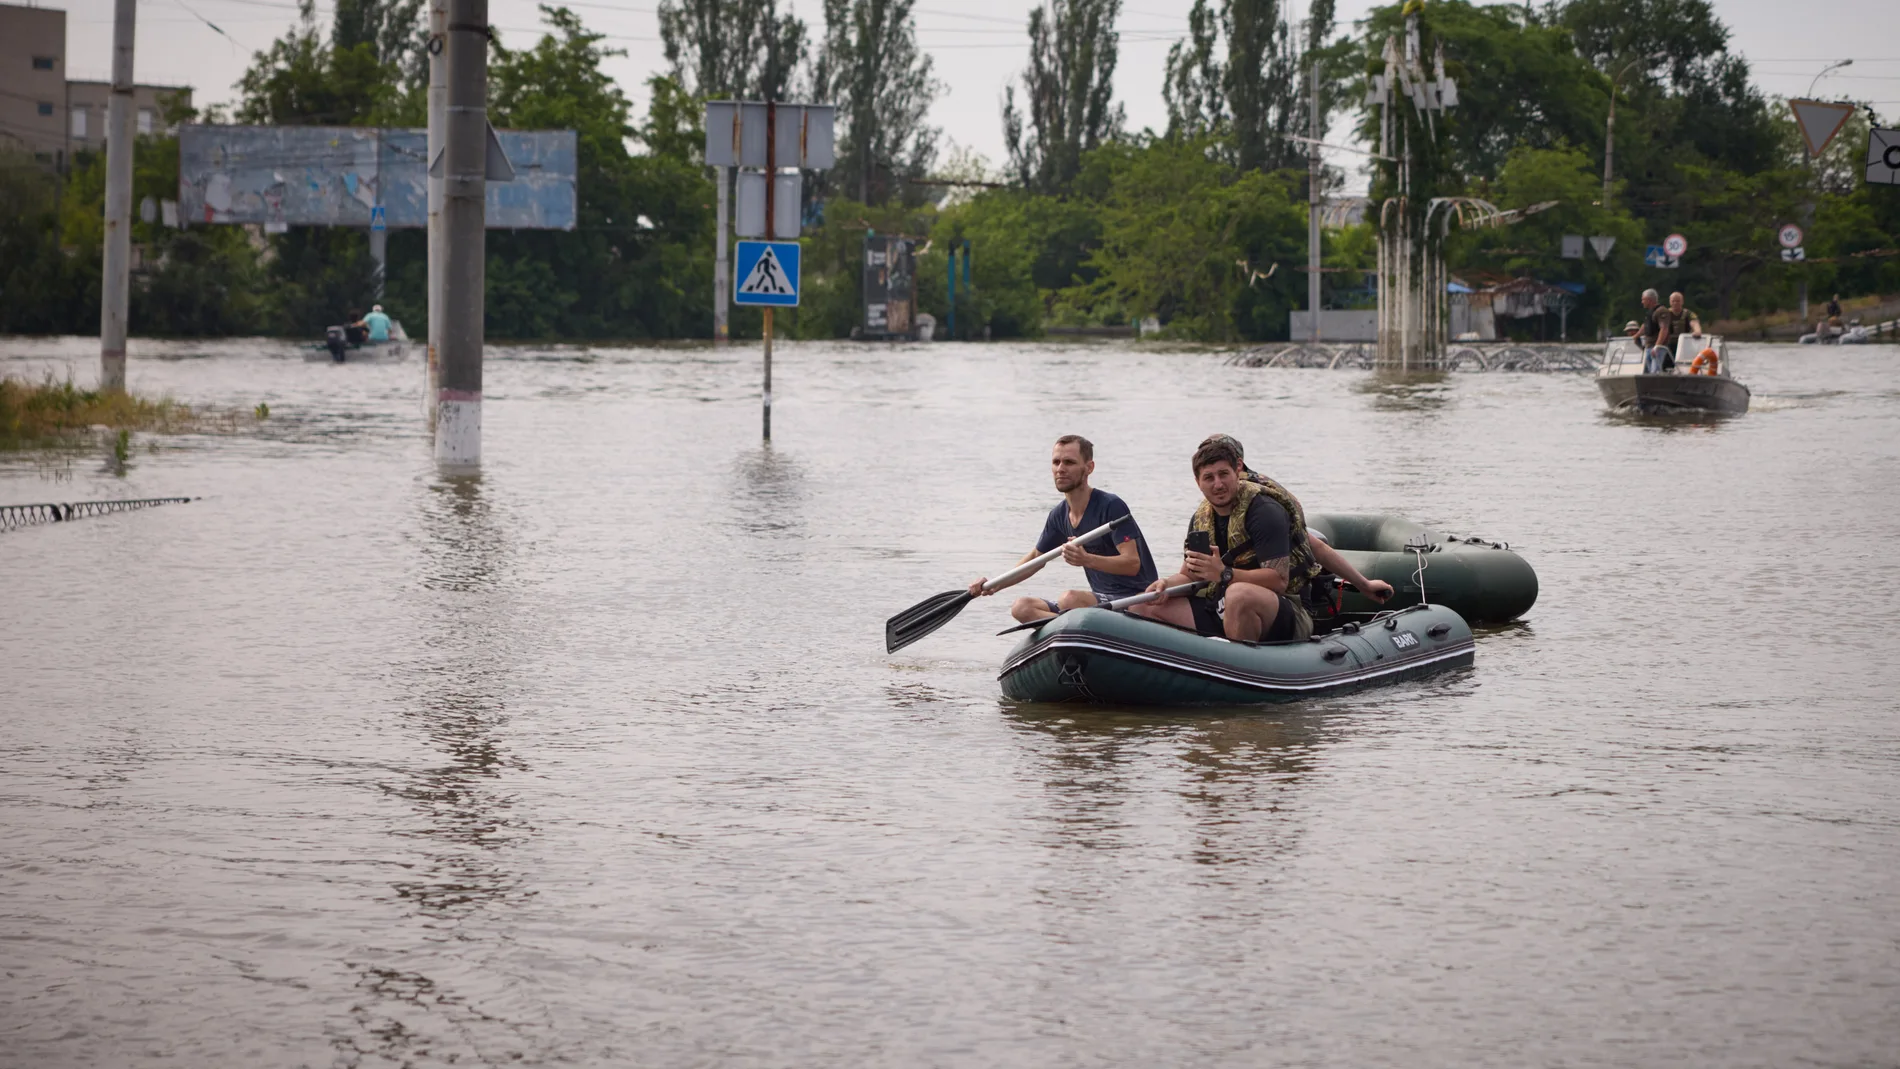 Ucrania.- Ascienden a 77 los heridos por las inundaciones en Jersón, Ucrania, según autoridades prorrusas